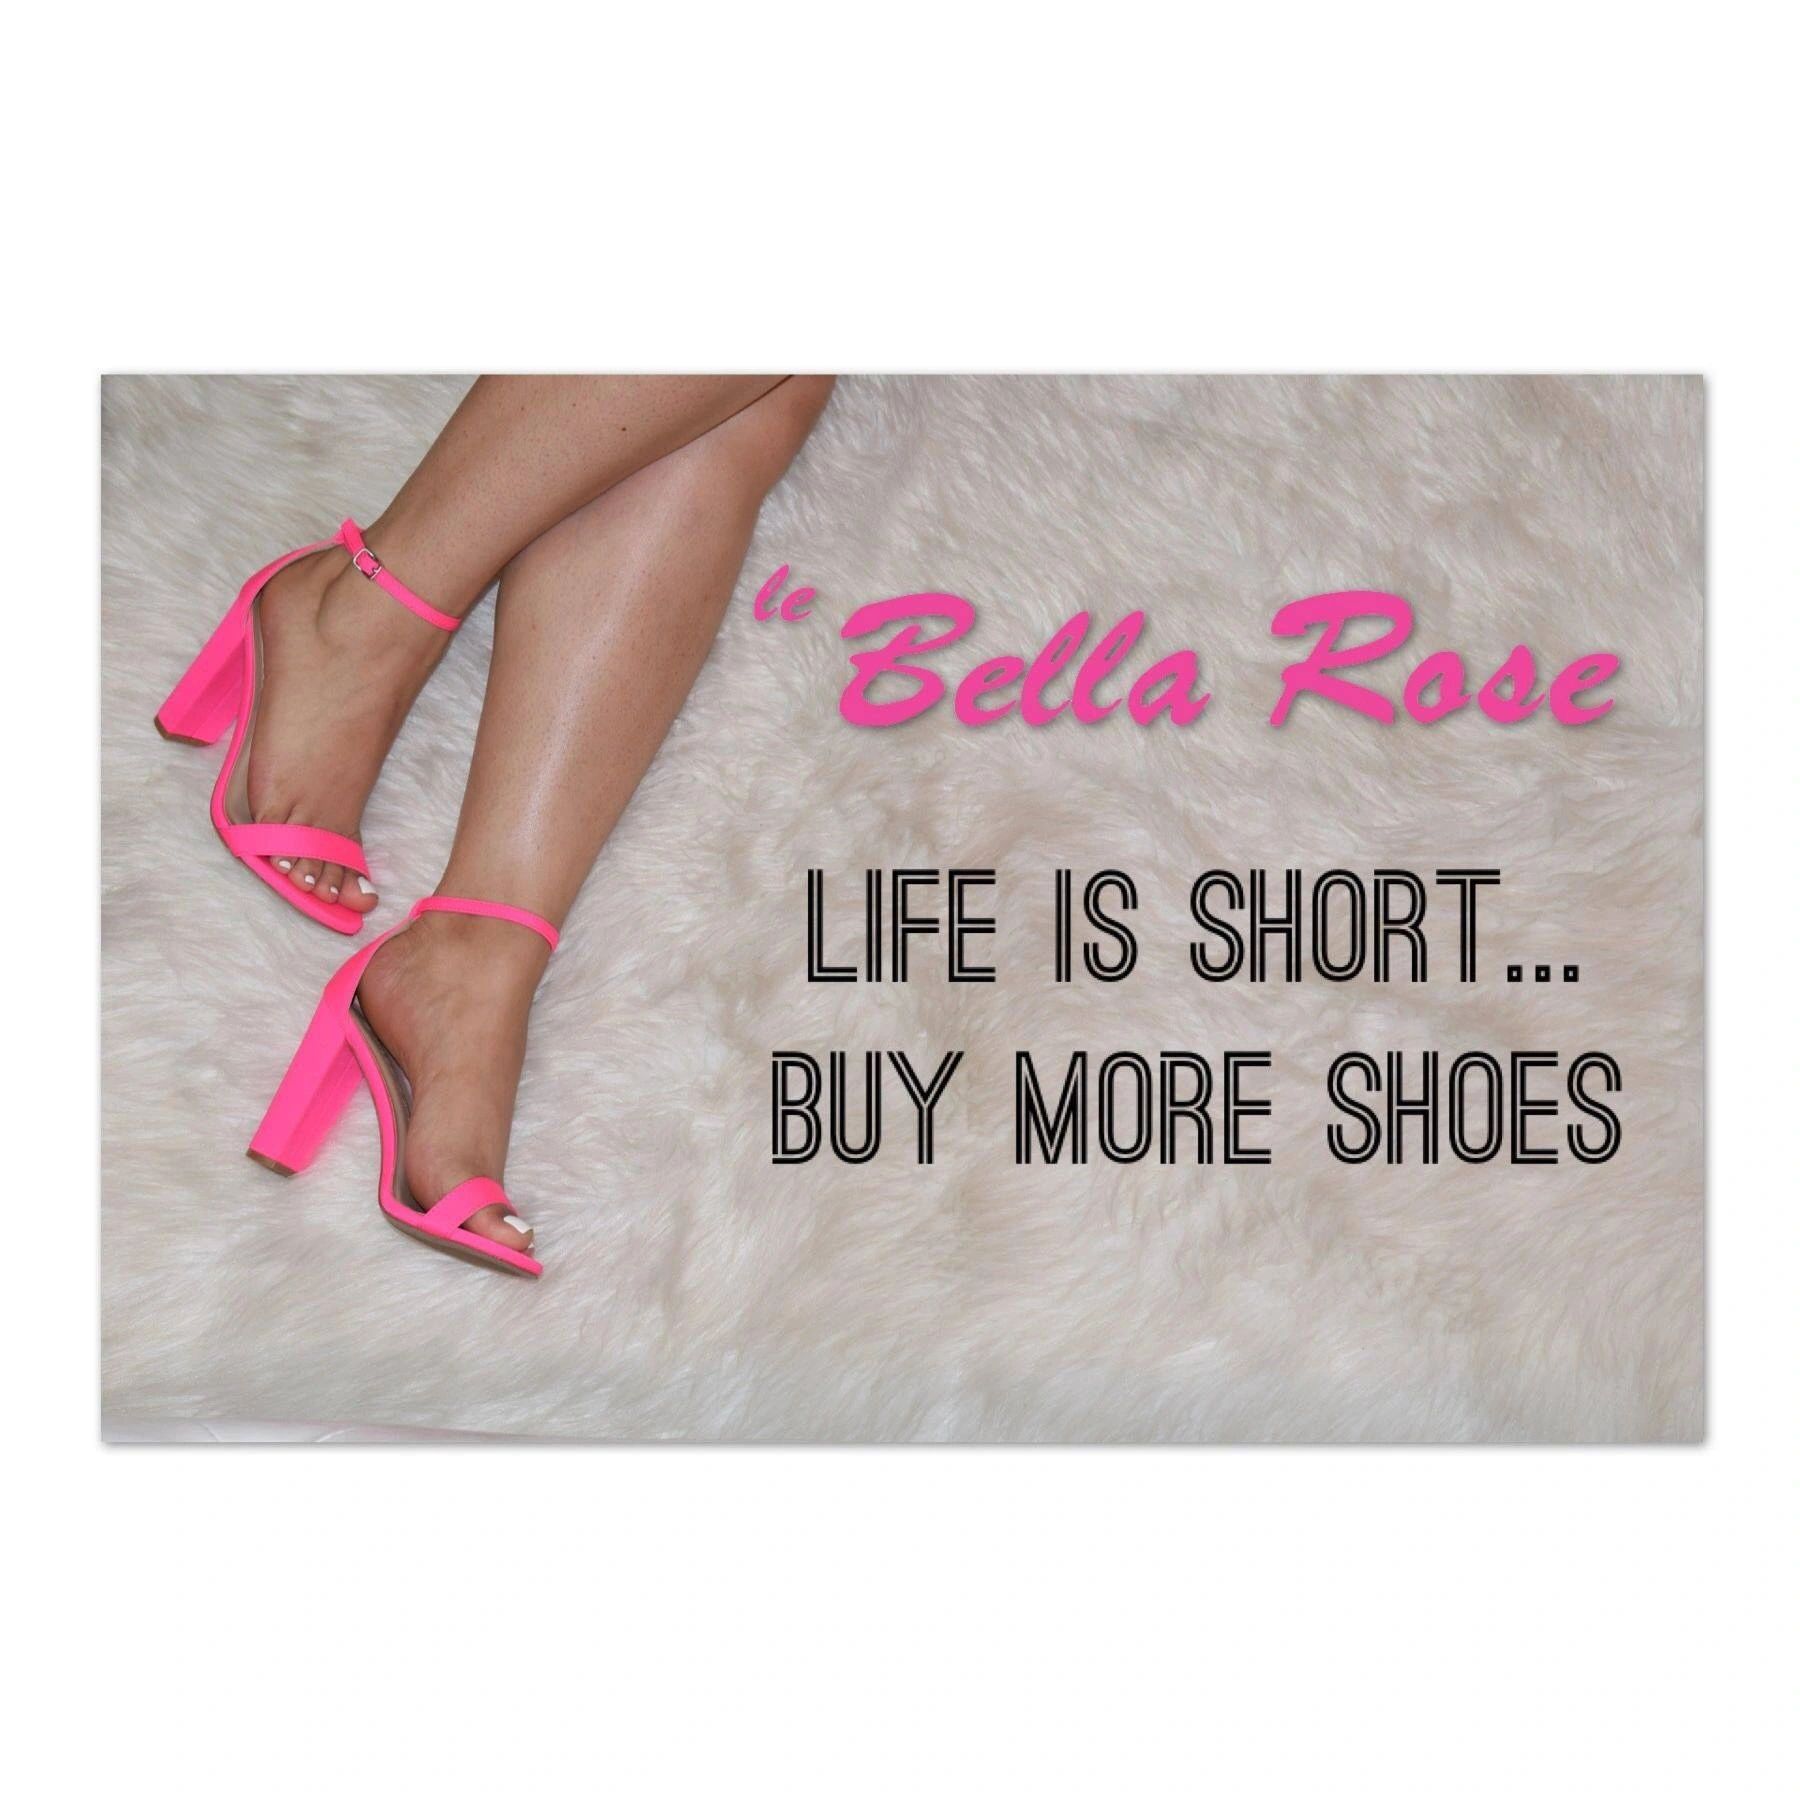 Pink so Pink La Belle Bag – La Belle Boutique by Lefranc